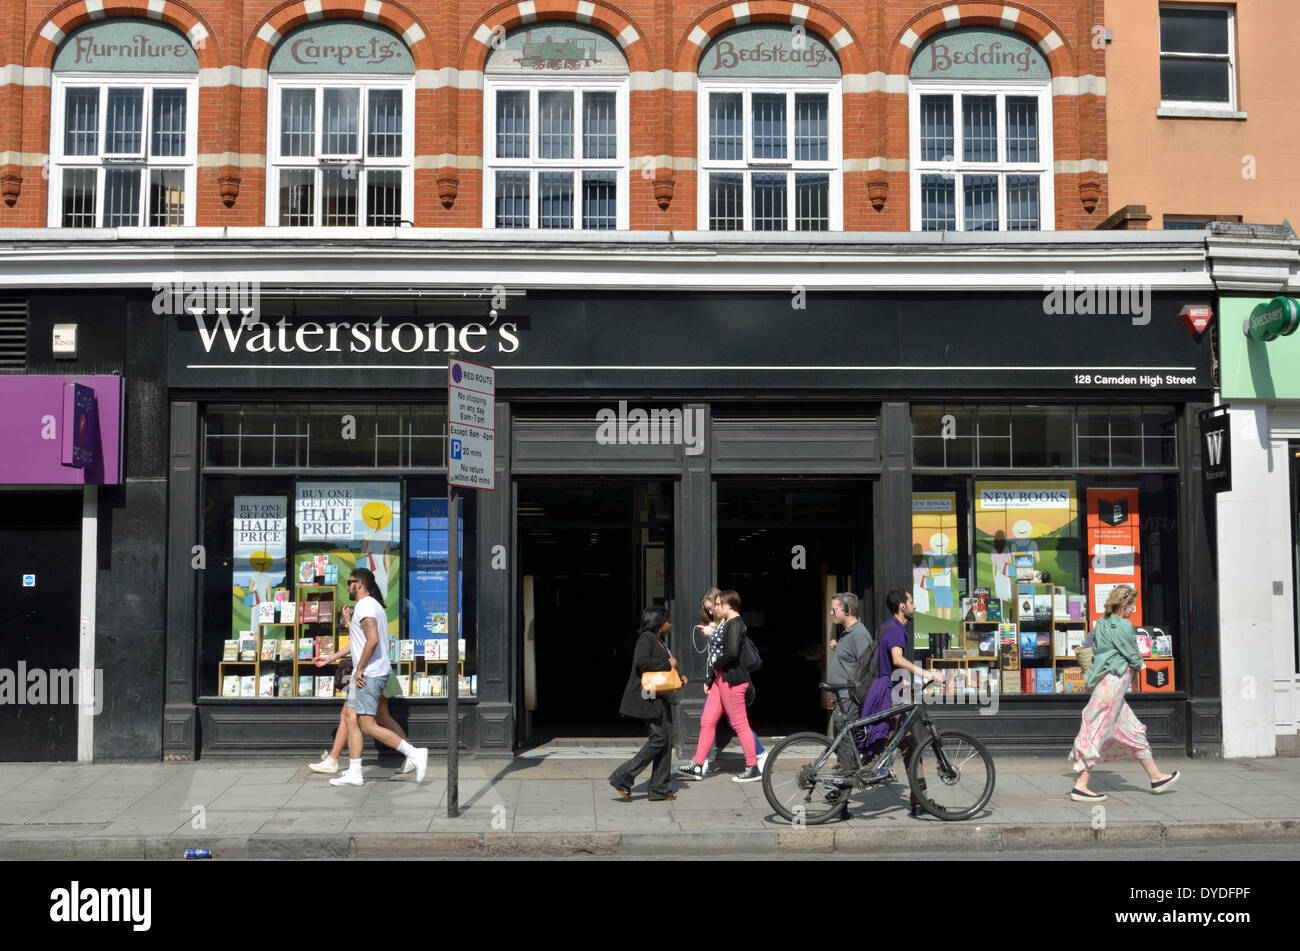 Waterstones bookshop in Camden High Street. Stock Photo